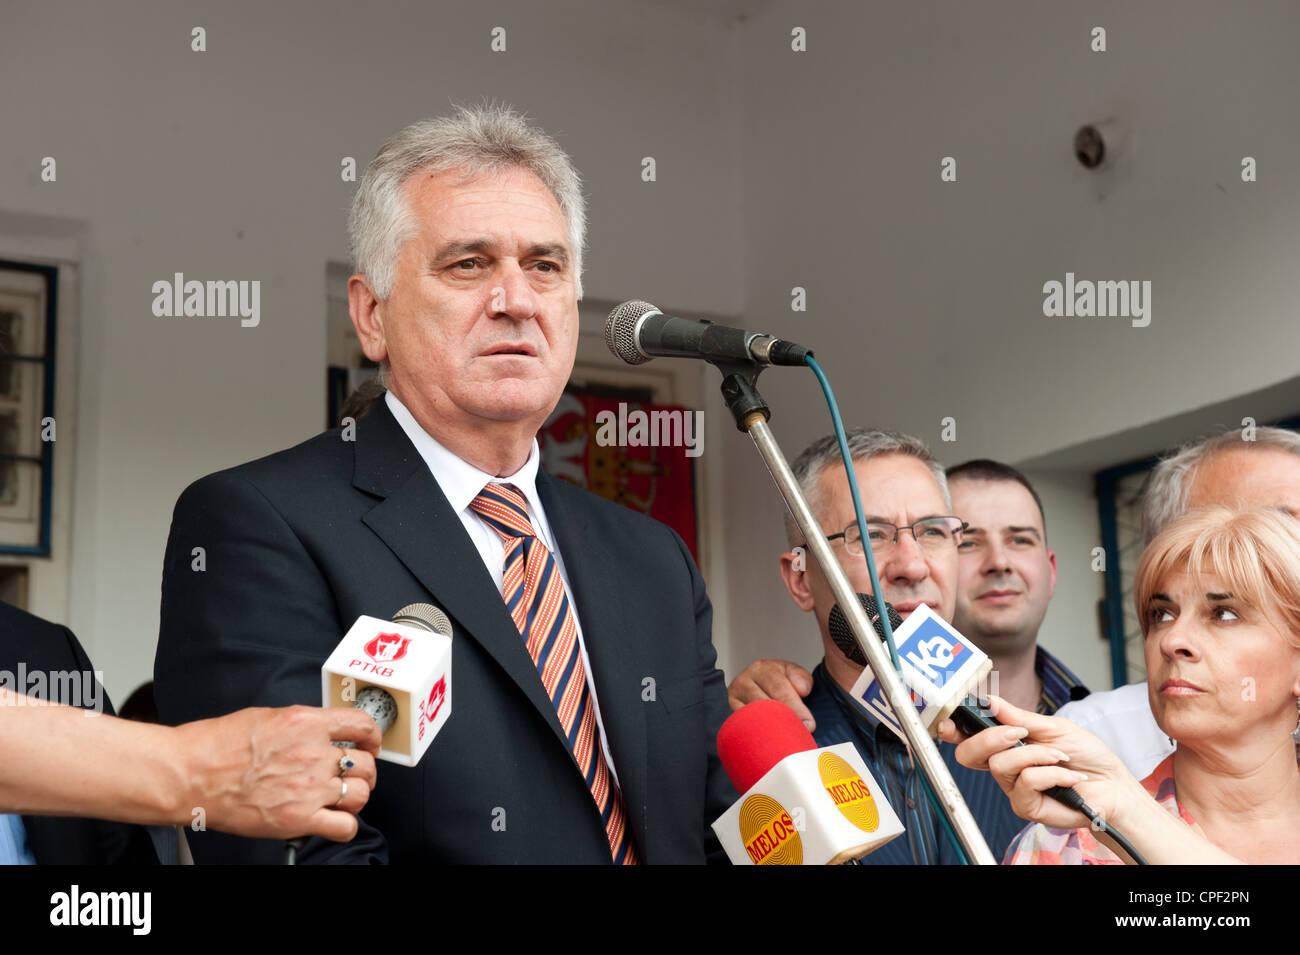 Tomislav Nikolic in Kraljevo few days before presidential elections 2012. Stock Photo